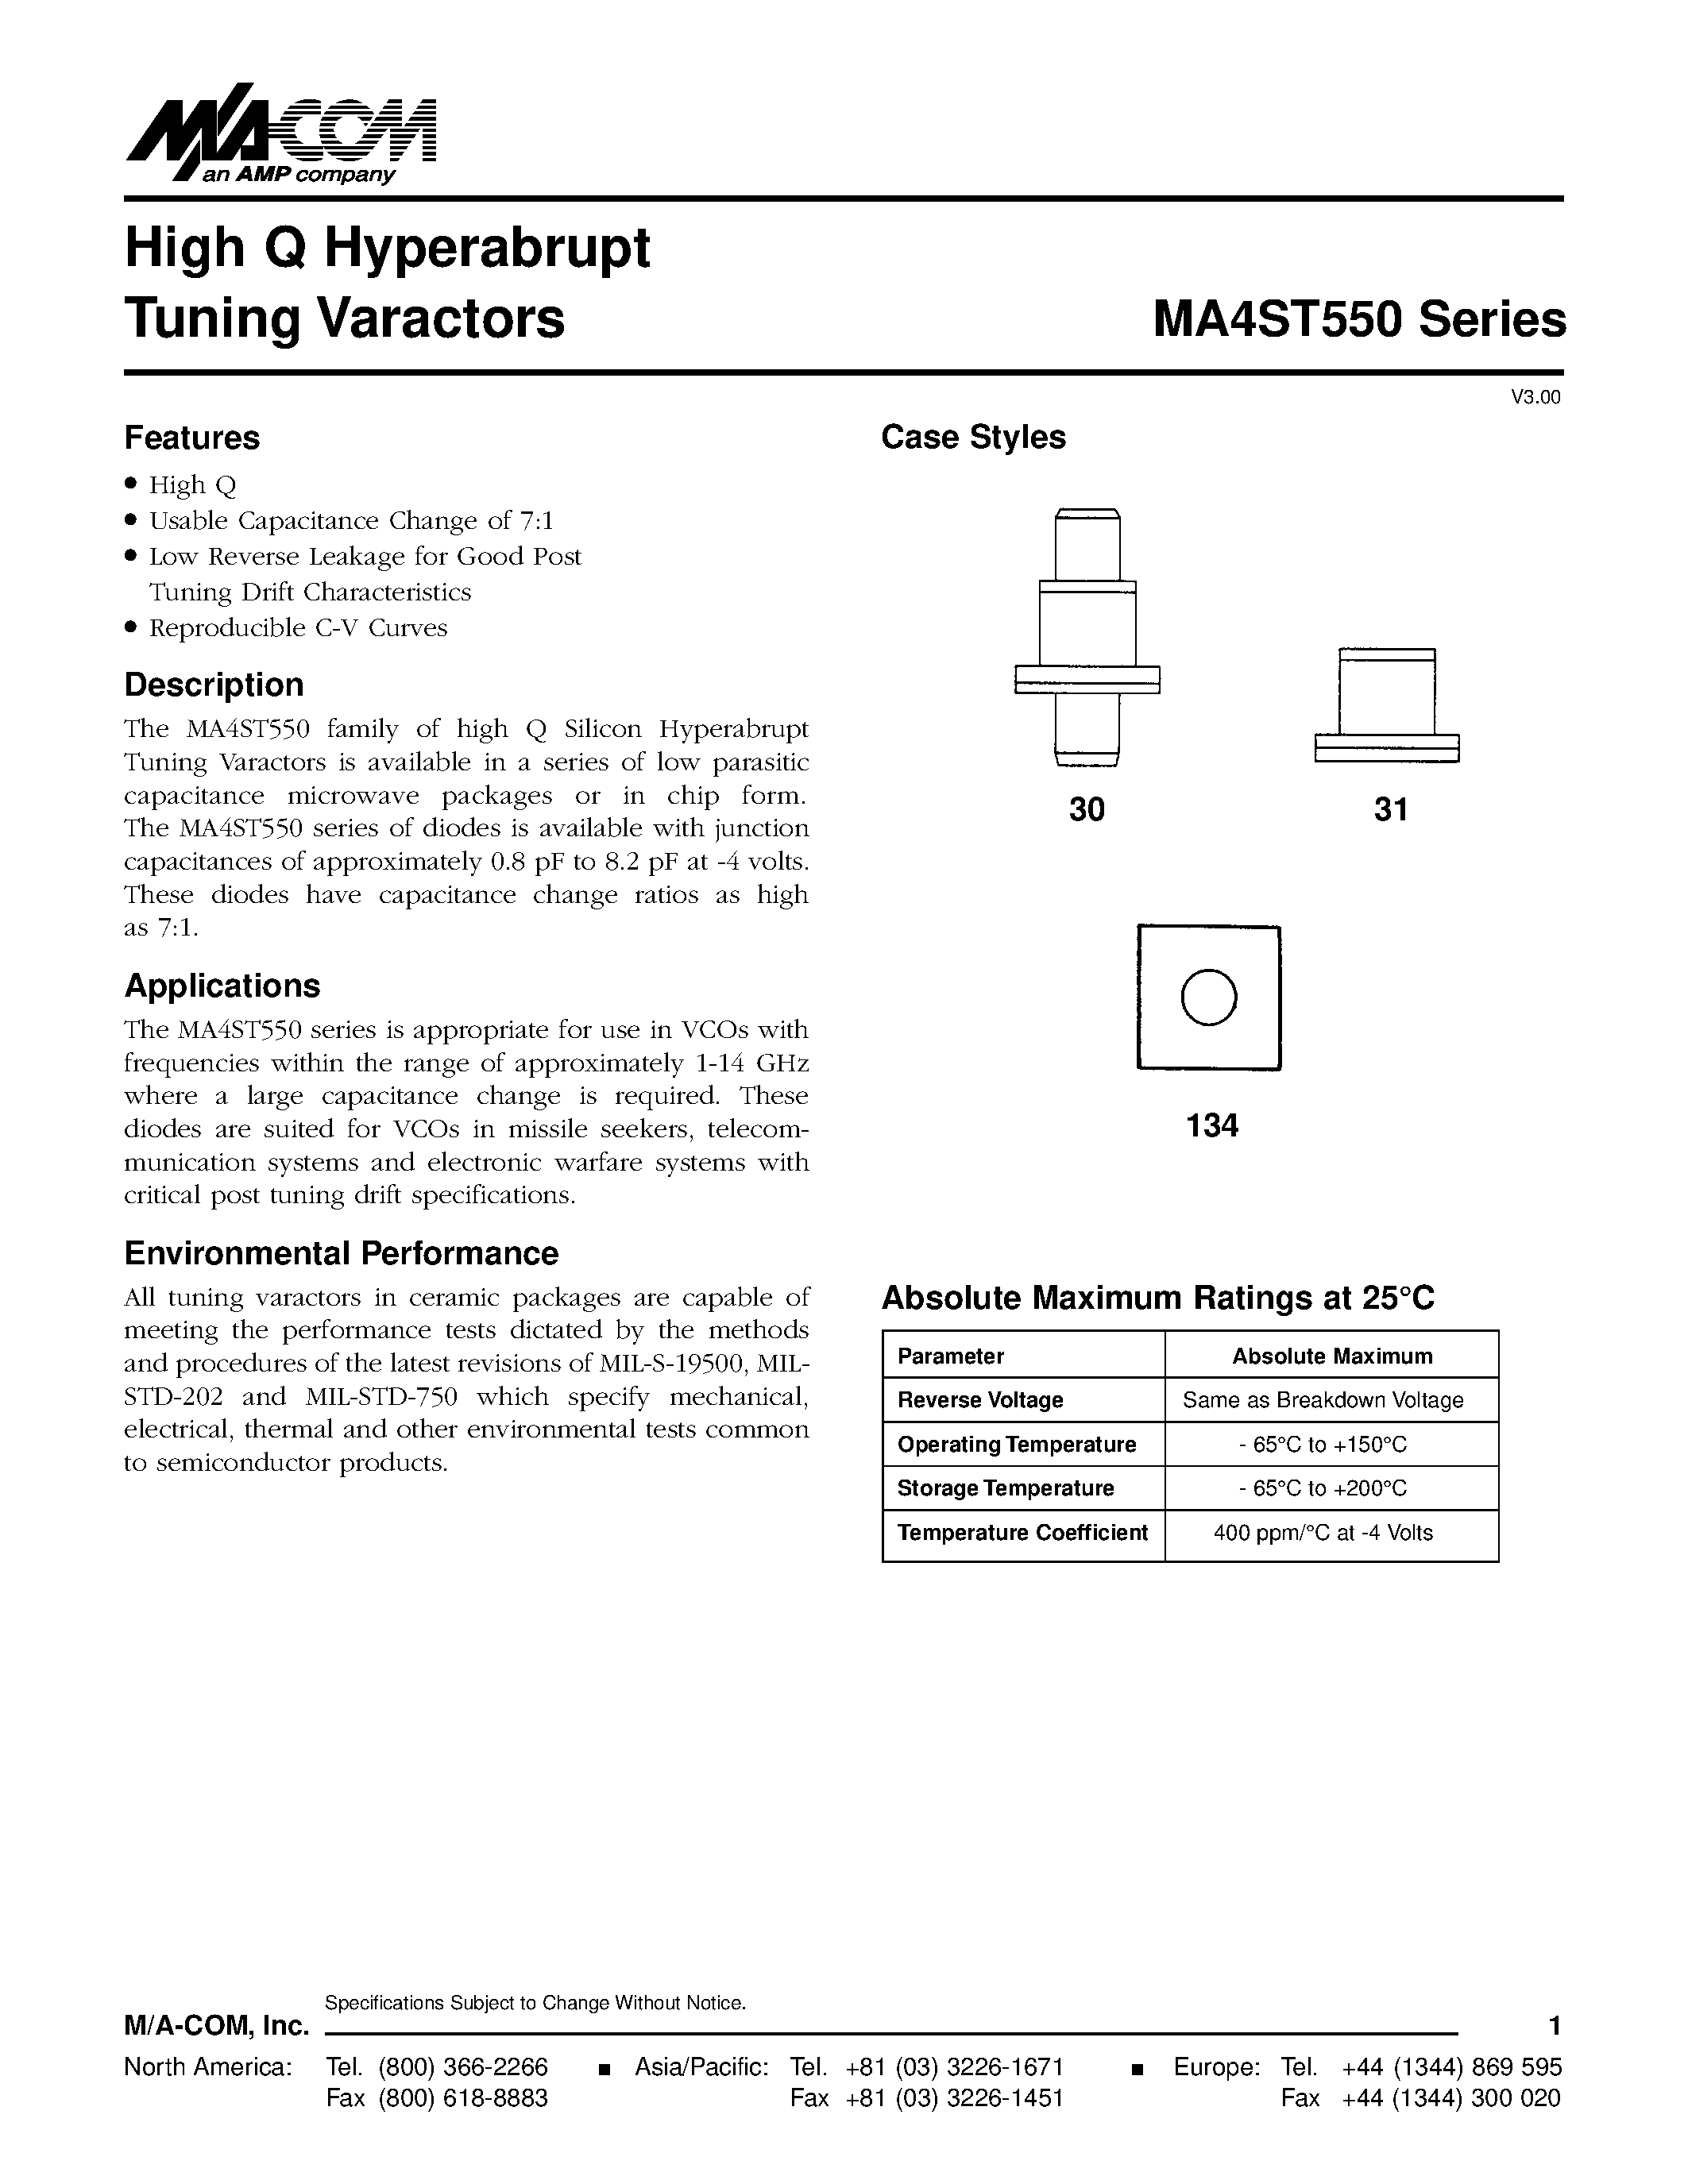 Даташит MA4ST561 - High Q Hyperabrupt Tuning Varactors страница 1